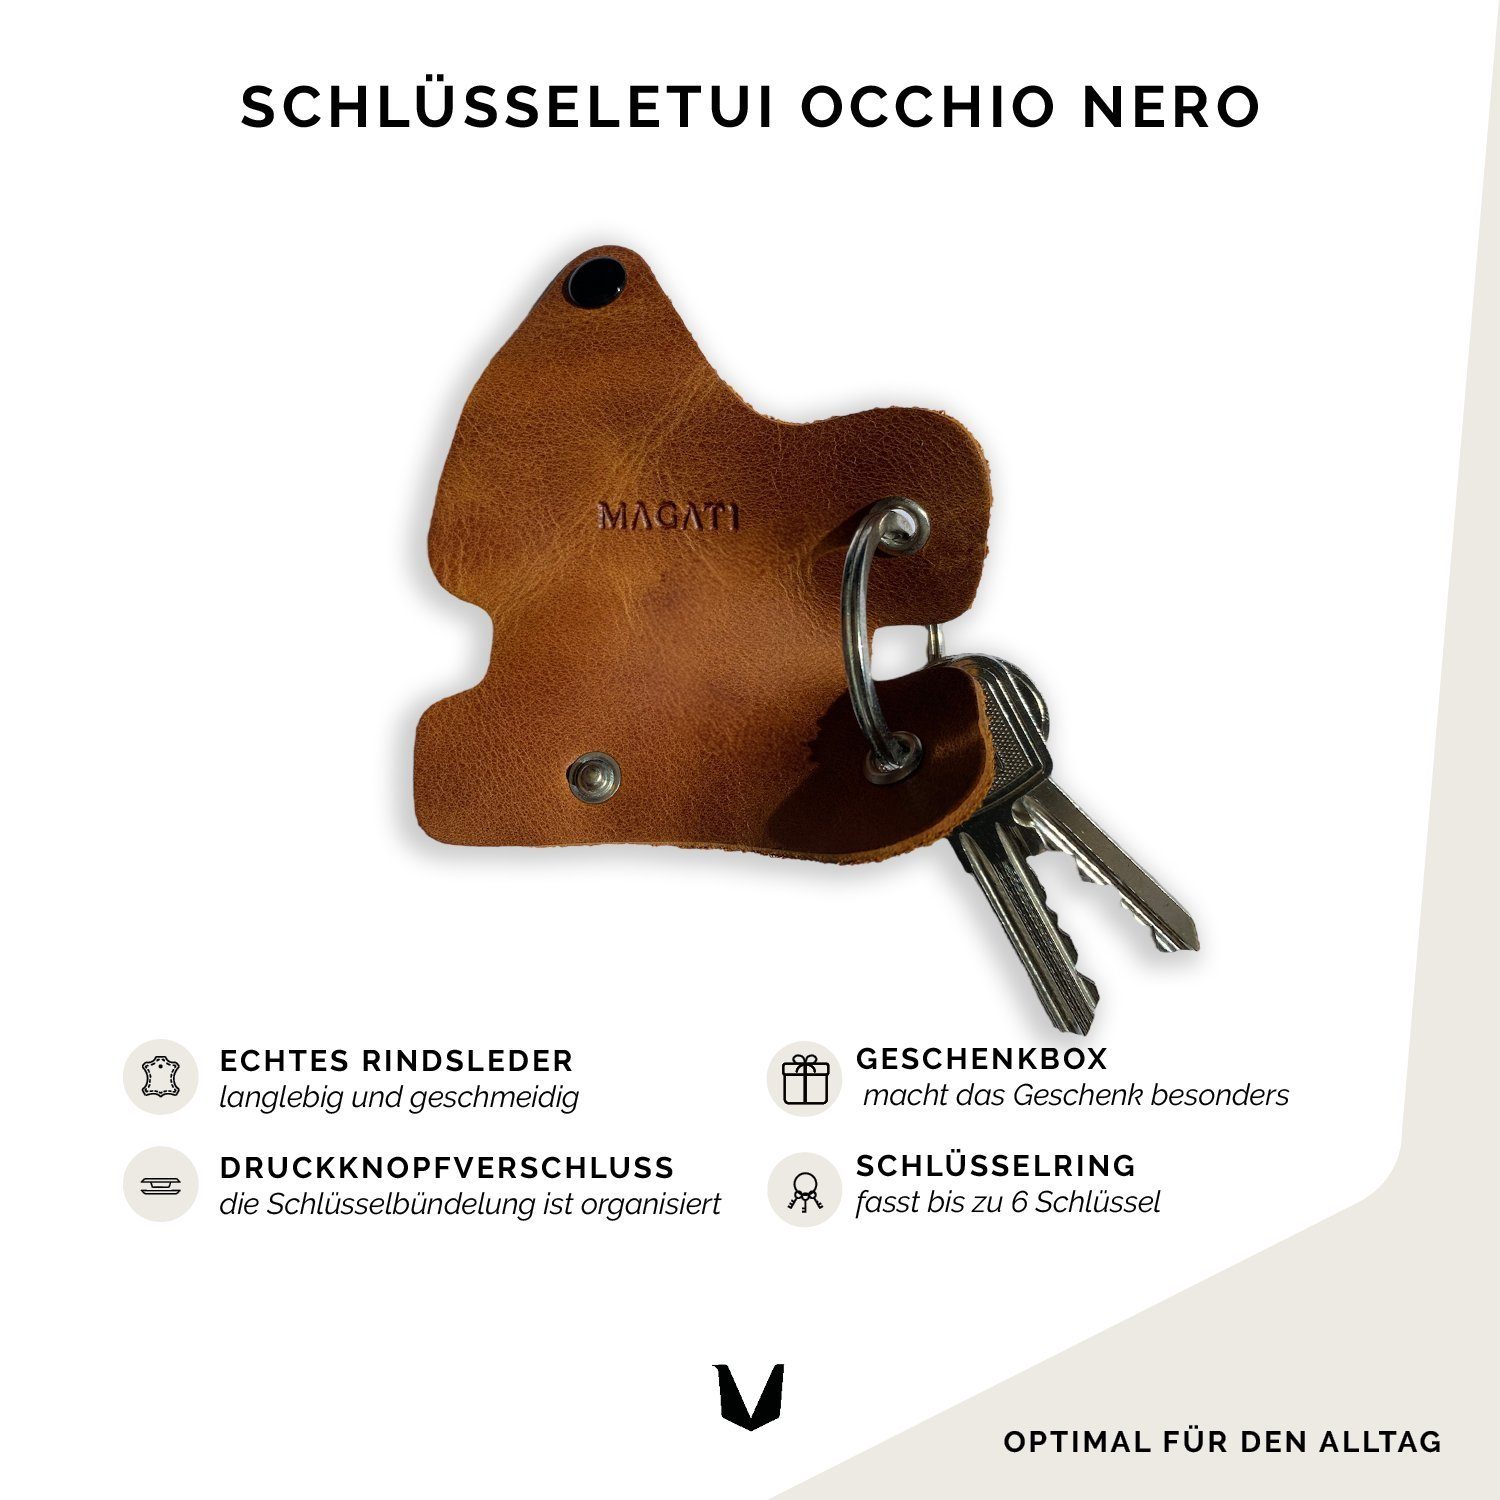 Schlüssel, 1-6 MAGATI Einkaufswagenlöser, Braun aus Platz Schlüsseltasche mit Schlüsselanhänger Nero Leder für Occhio